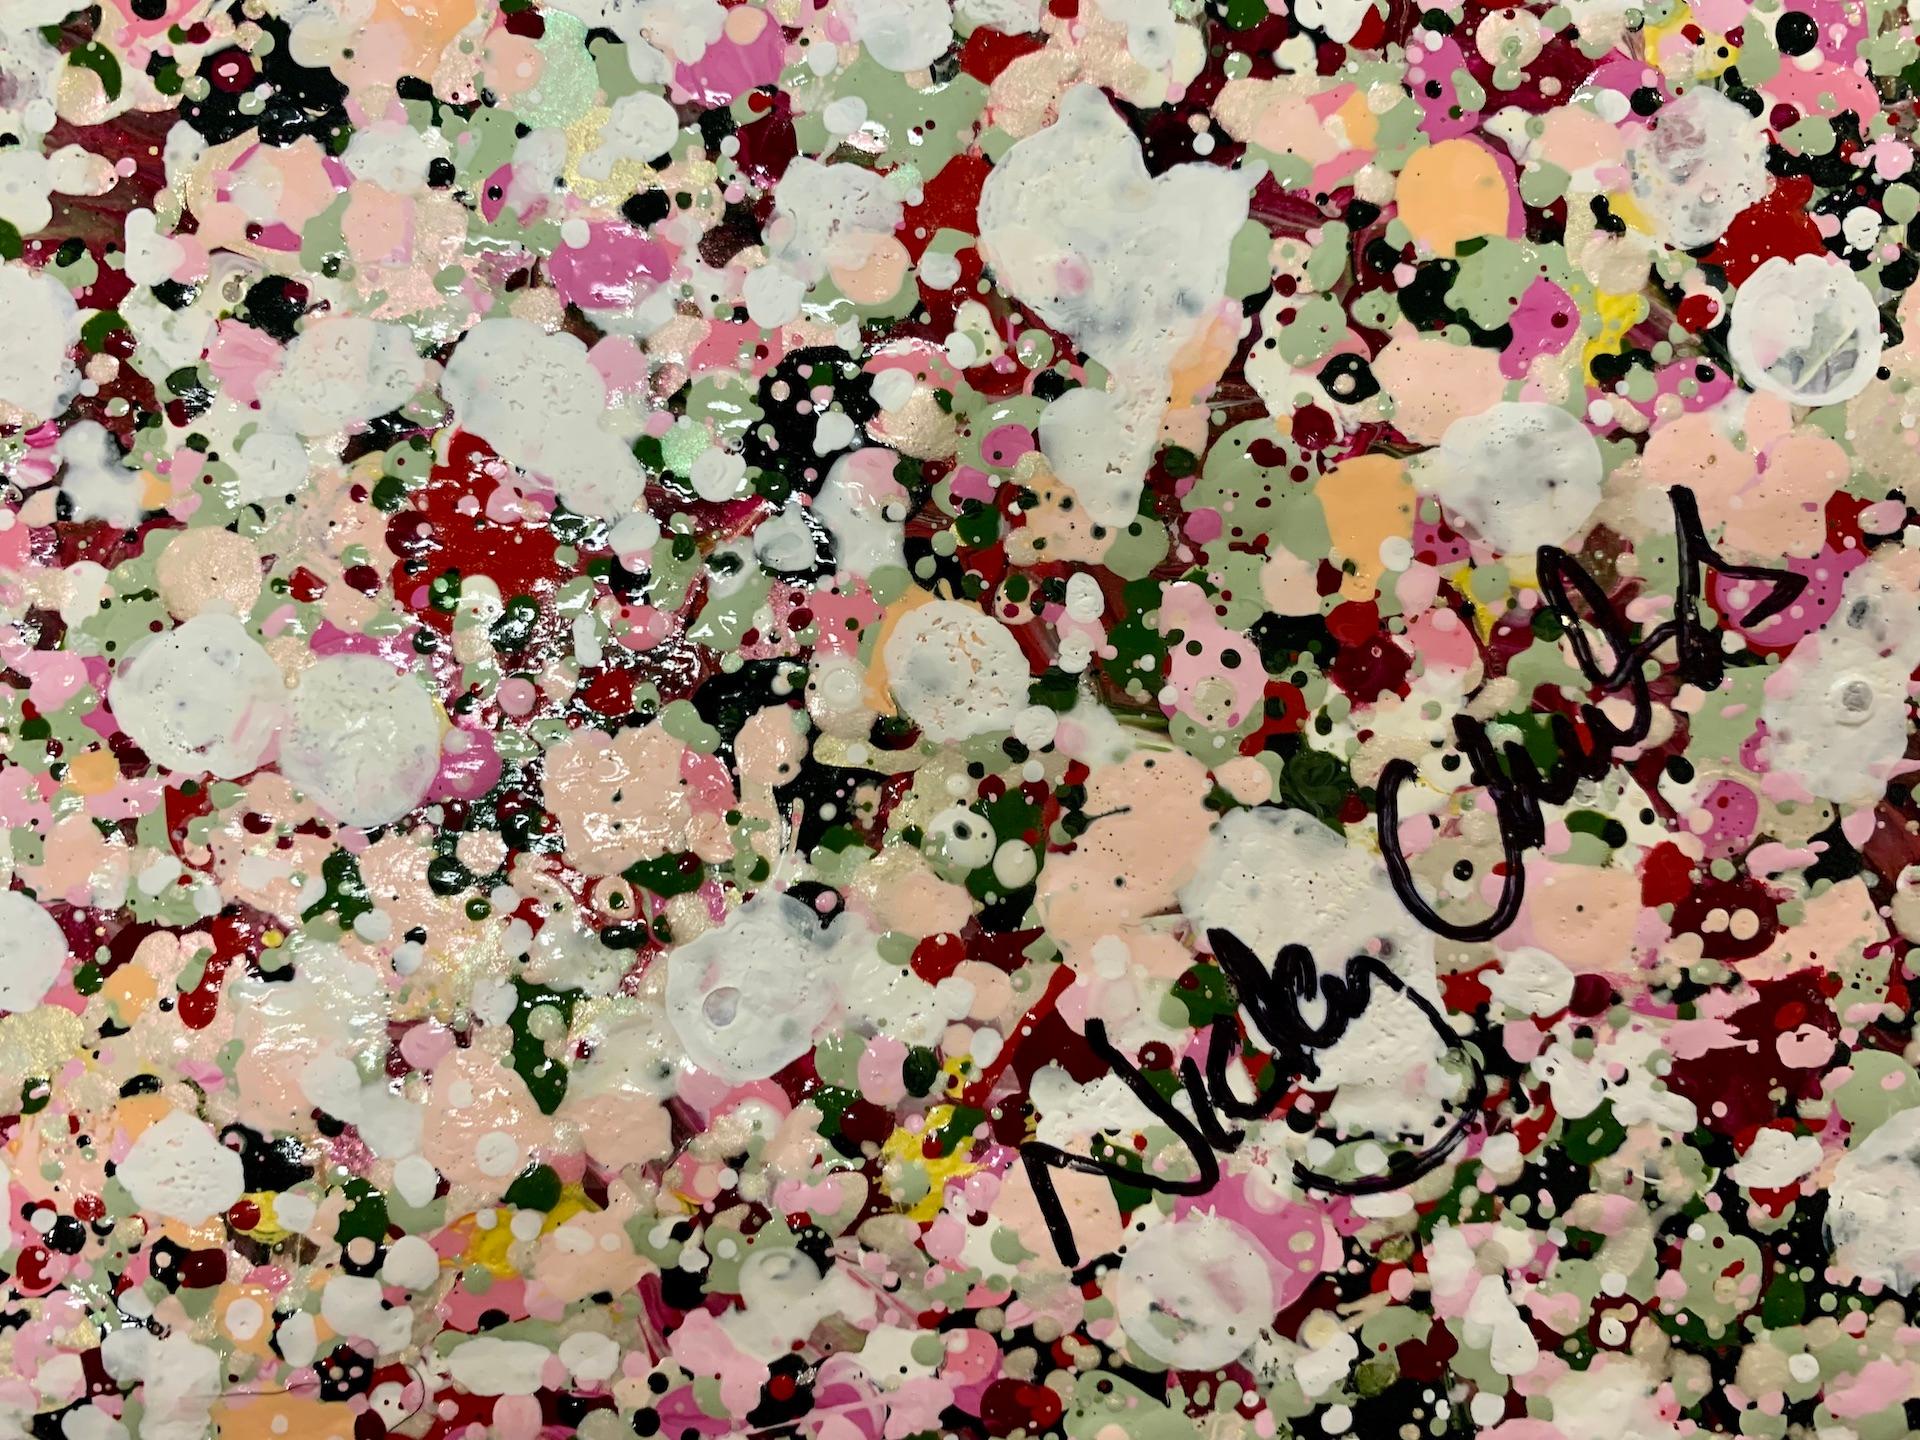 Wild And Happy Spring ist ein signiertes Original-Acrylgemälde auf Leinwand, das einen blühenden Baum in Weiß, Rosa und Grün in einem Blumenfeld in denselben Farben vor einem goldenen Himmel zeigt.

Entdecken Sie mehr von Nicky Chubbs